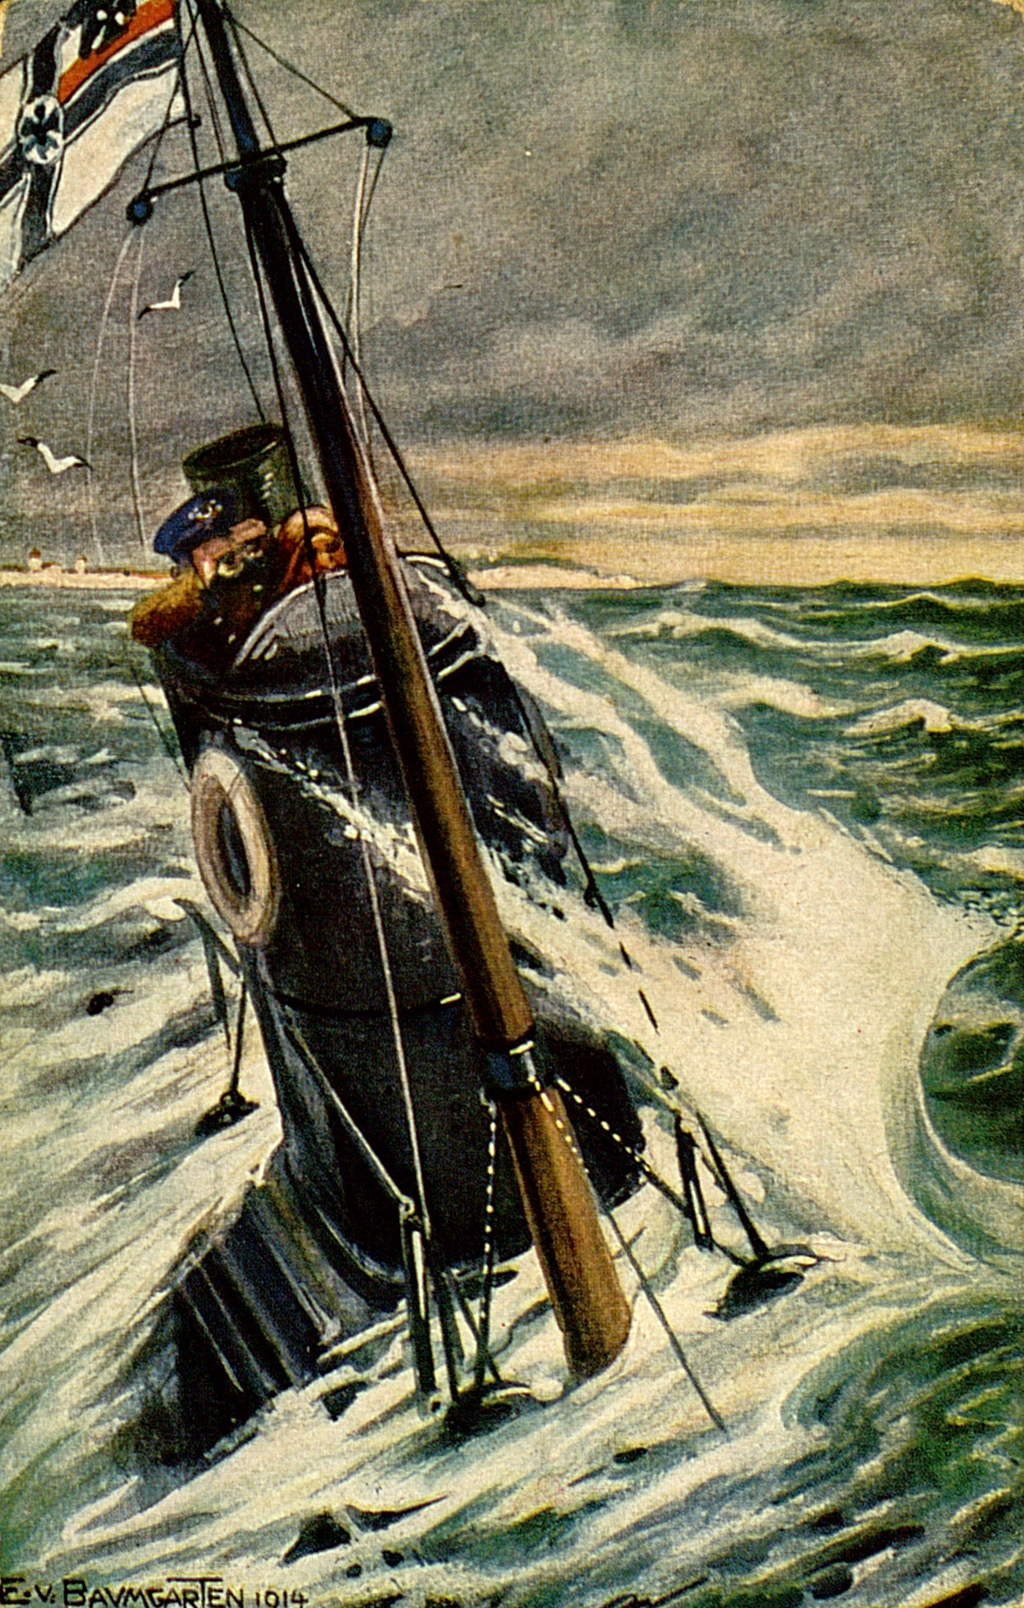 Zu sehen ist ein Gemälde. Es zeigt den Turm eines unter Wasser befindlichen U-Bootes. Der Turm ist mit dem Kapitän bemannt. Er sucht das aufgewühlte Meer mit einem Fernglas ab. Vor dem Turm befindet sich ein Mast an dem die Reichskriegsflagge weht. Im Hintergrund lassen sich die Kalkfelsen der englischen Küste erkennen. 